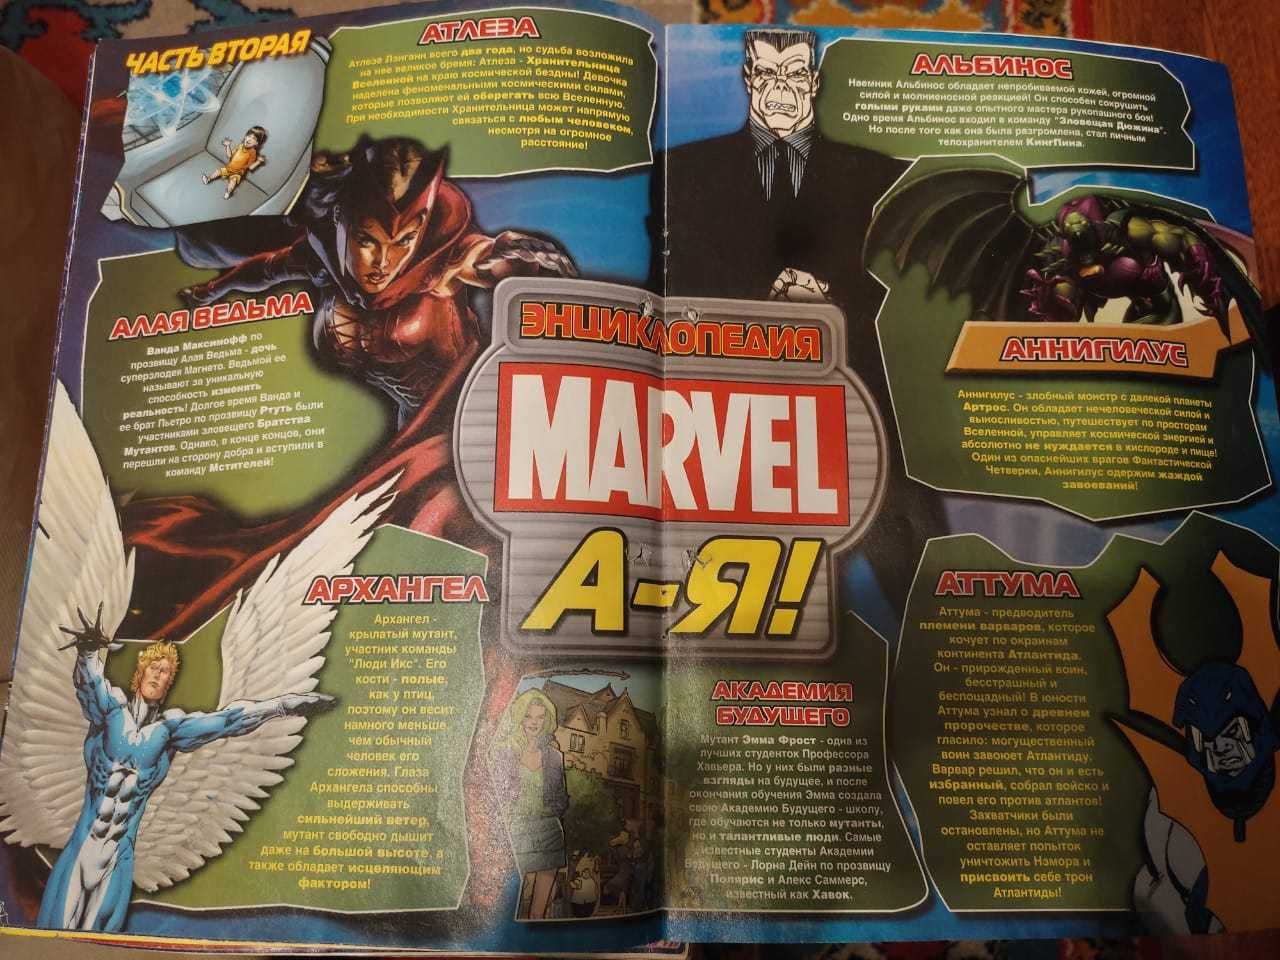 Играй и учись с человеком пауком комиксы ретро 14 и 19 номера Marvel